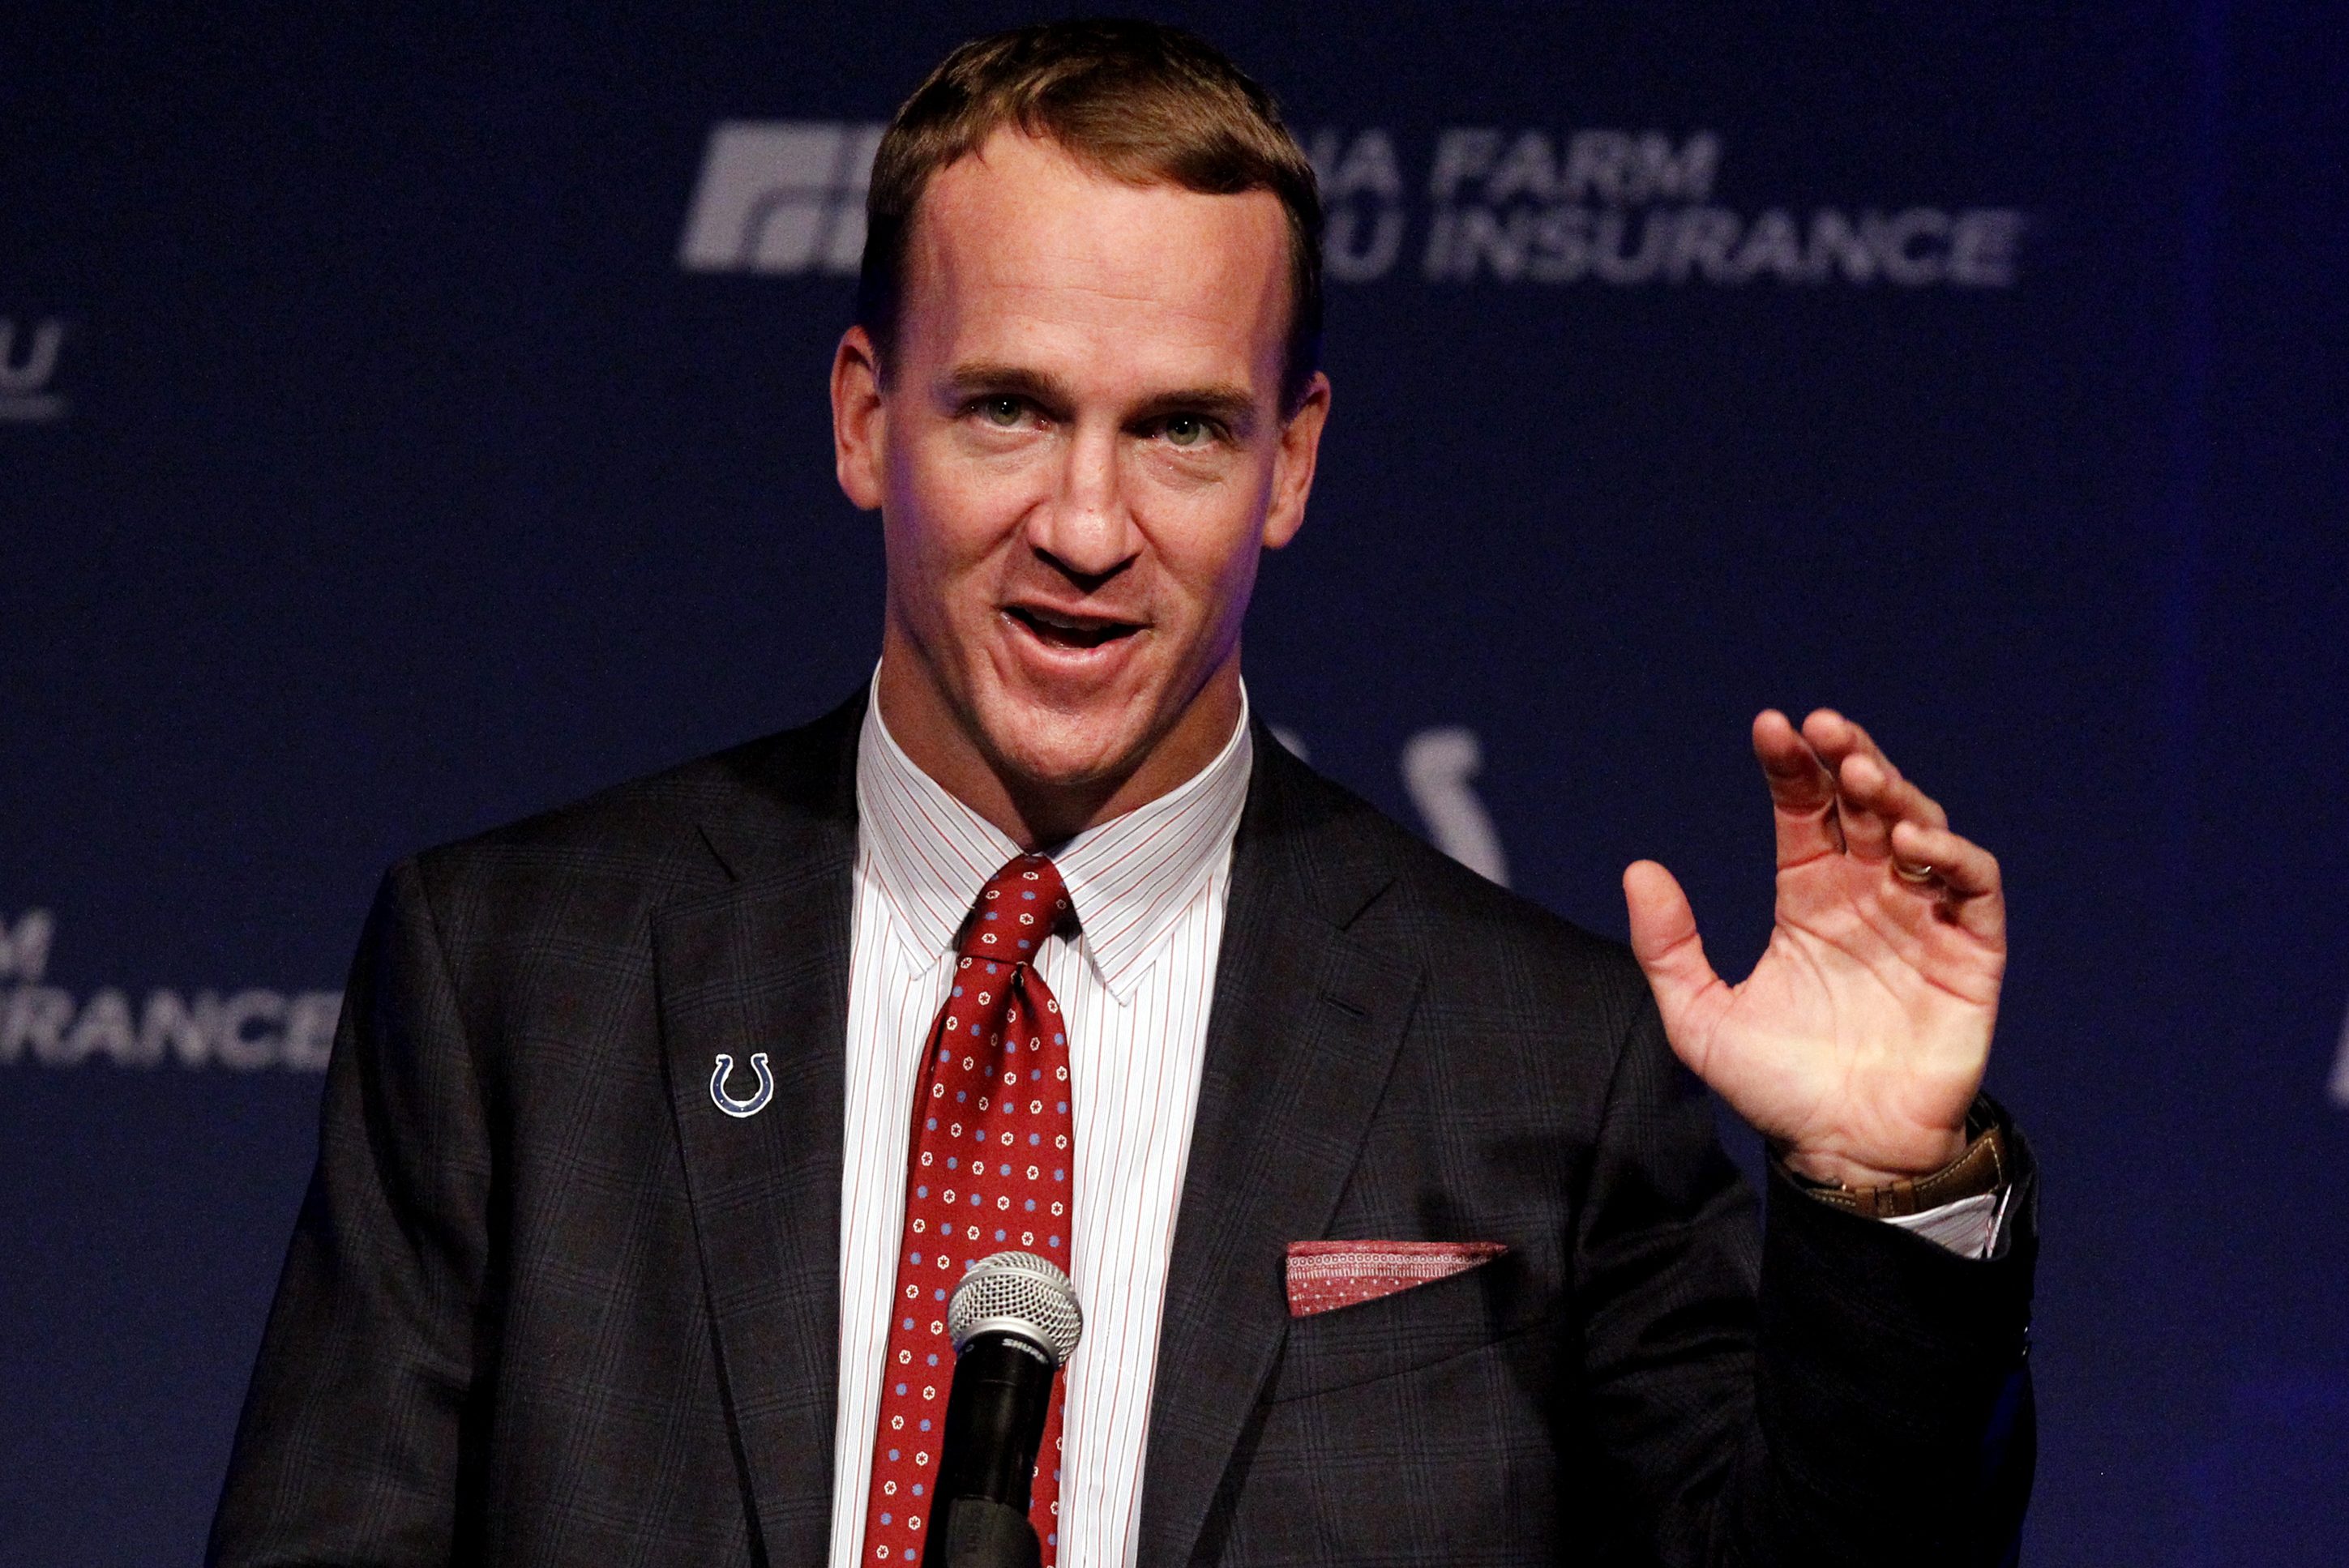 NBC Taps Peyton Manning to Host "College Bowl" Reboot